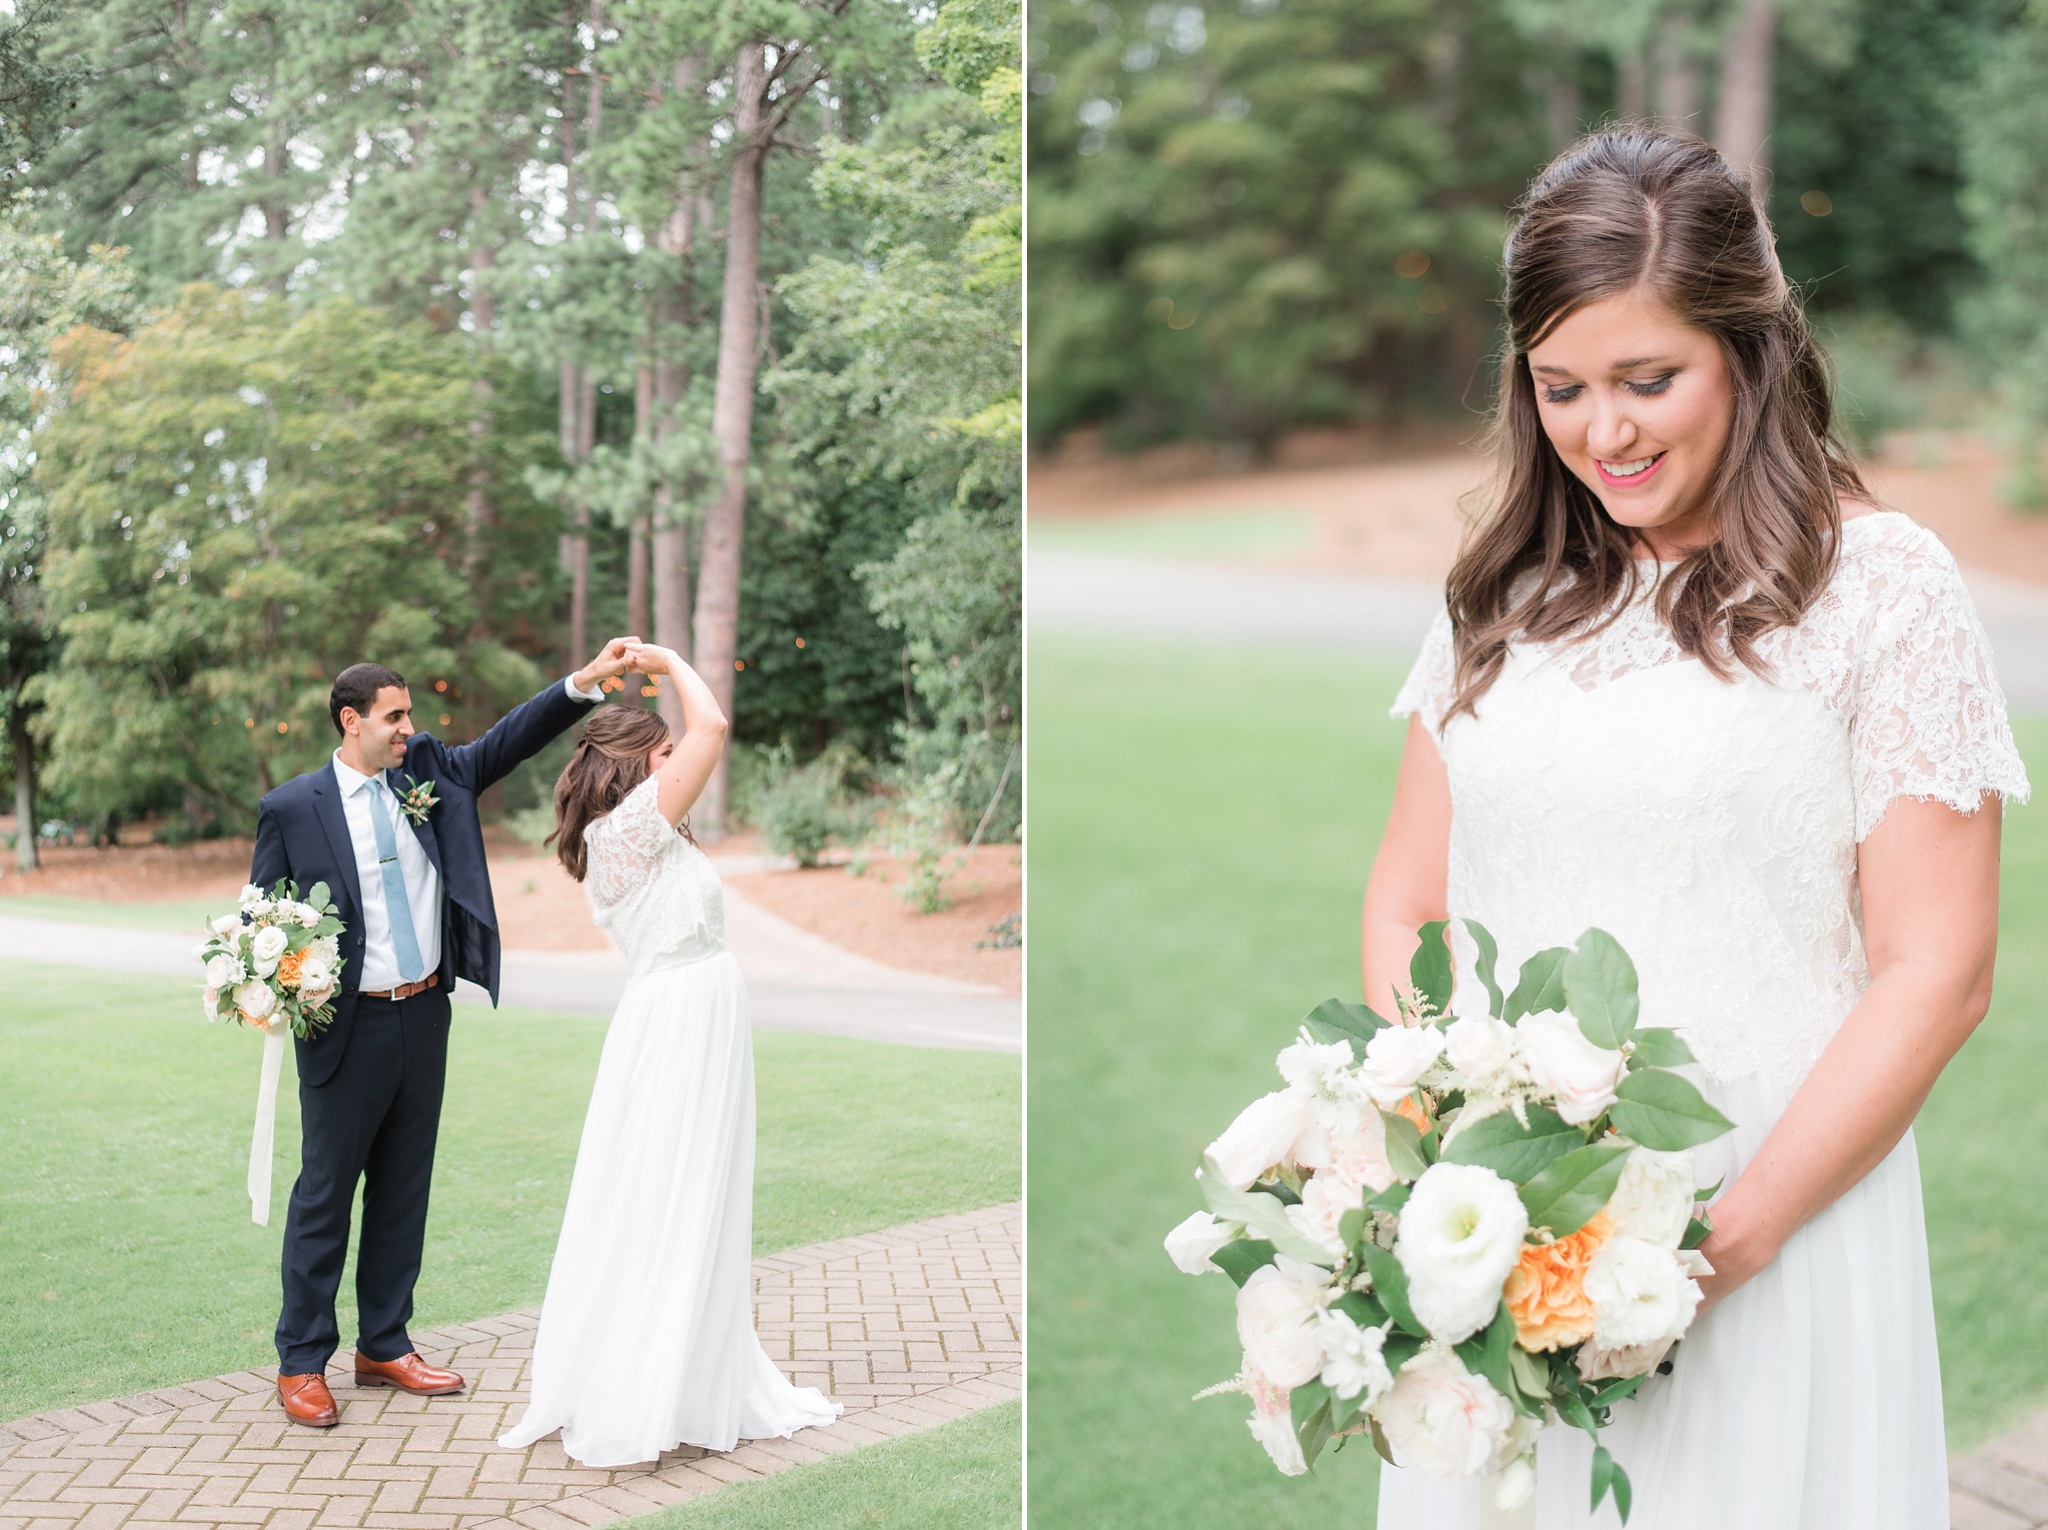 Aldridge Gardens Hoover Alabama Wedding Day | Birmingham Alabama Wedding Photographers_0022.jpg